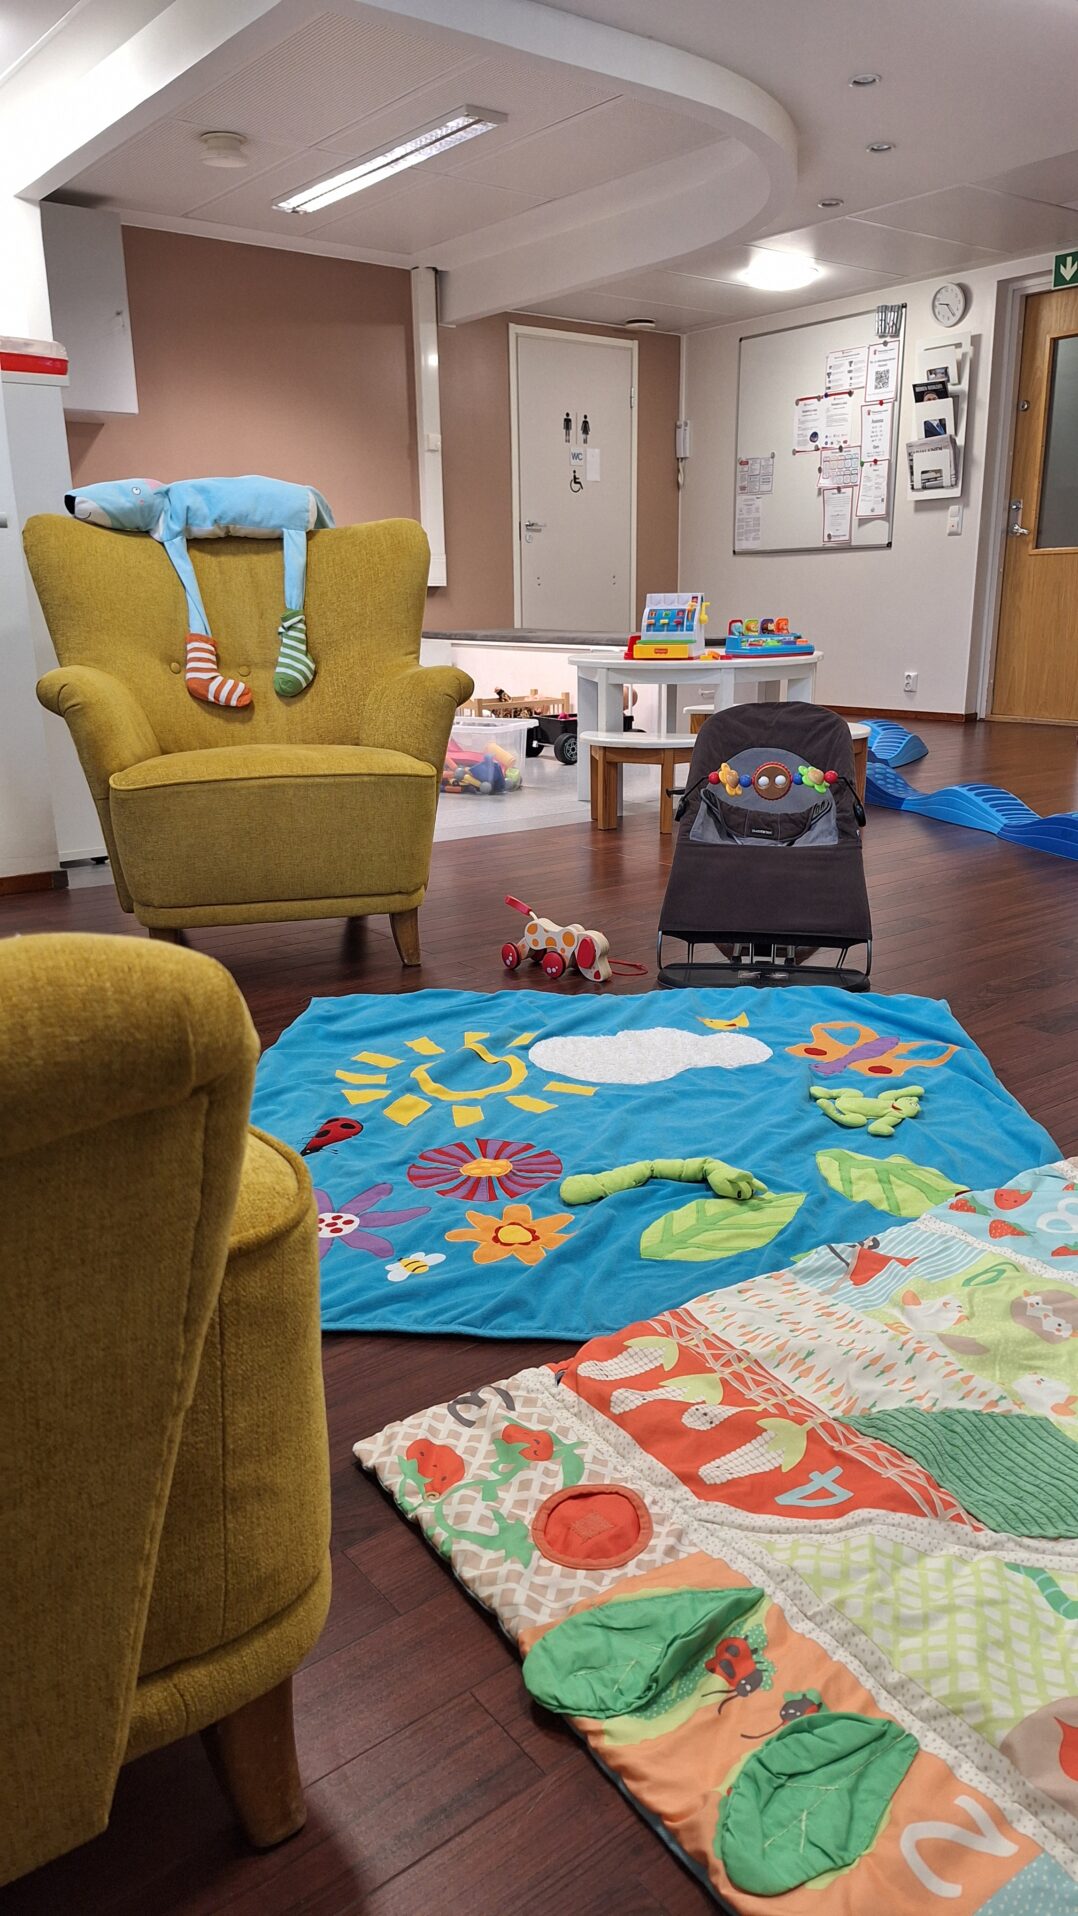 Kuva Perheentalon oleskelu- ja leikkitilasta. Etualalla sohva ja nojatuoli sekä kaksi vauvan peittoa levitettynä lattialle. Taustalla näkyy vauvan sitteri ja leluja.